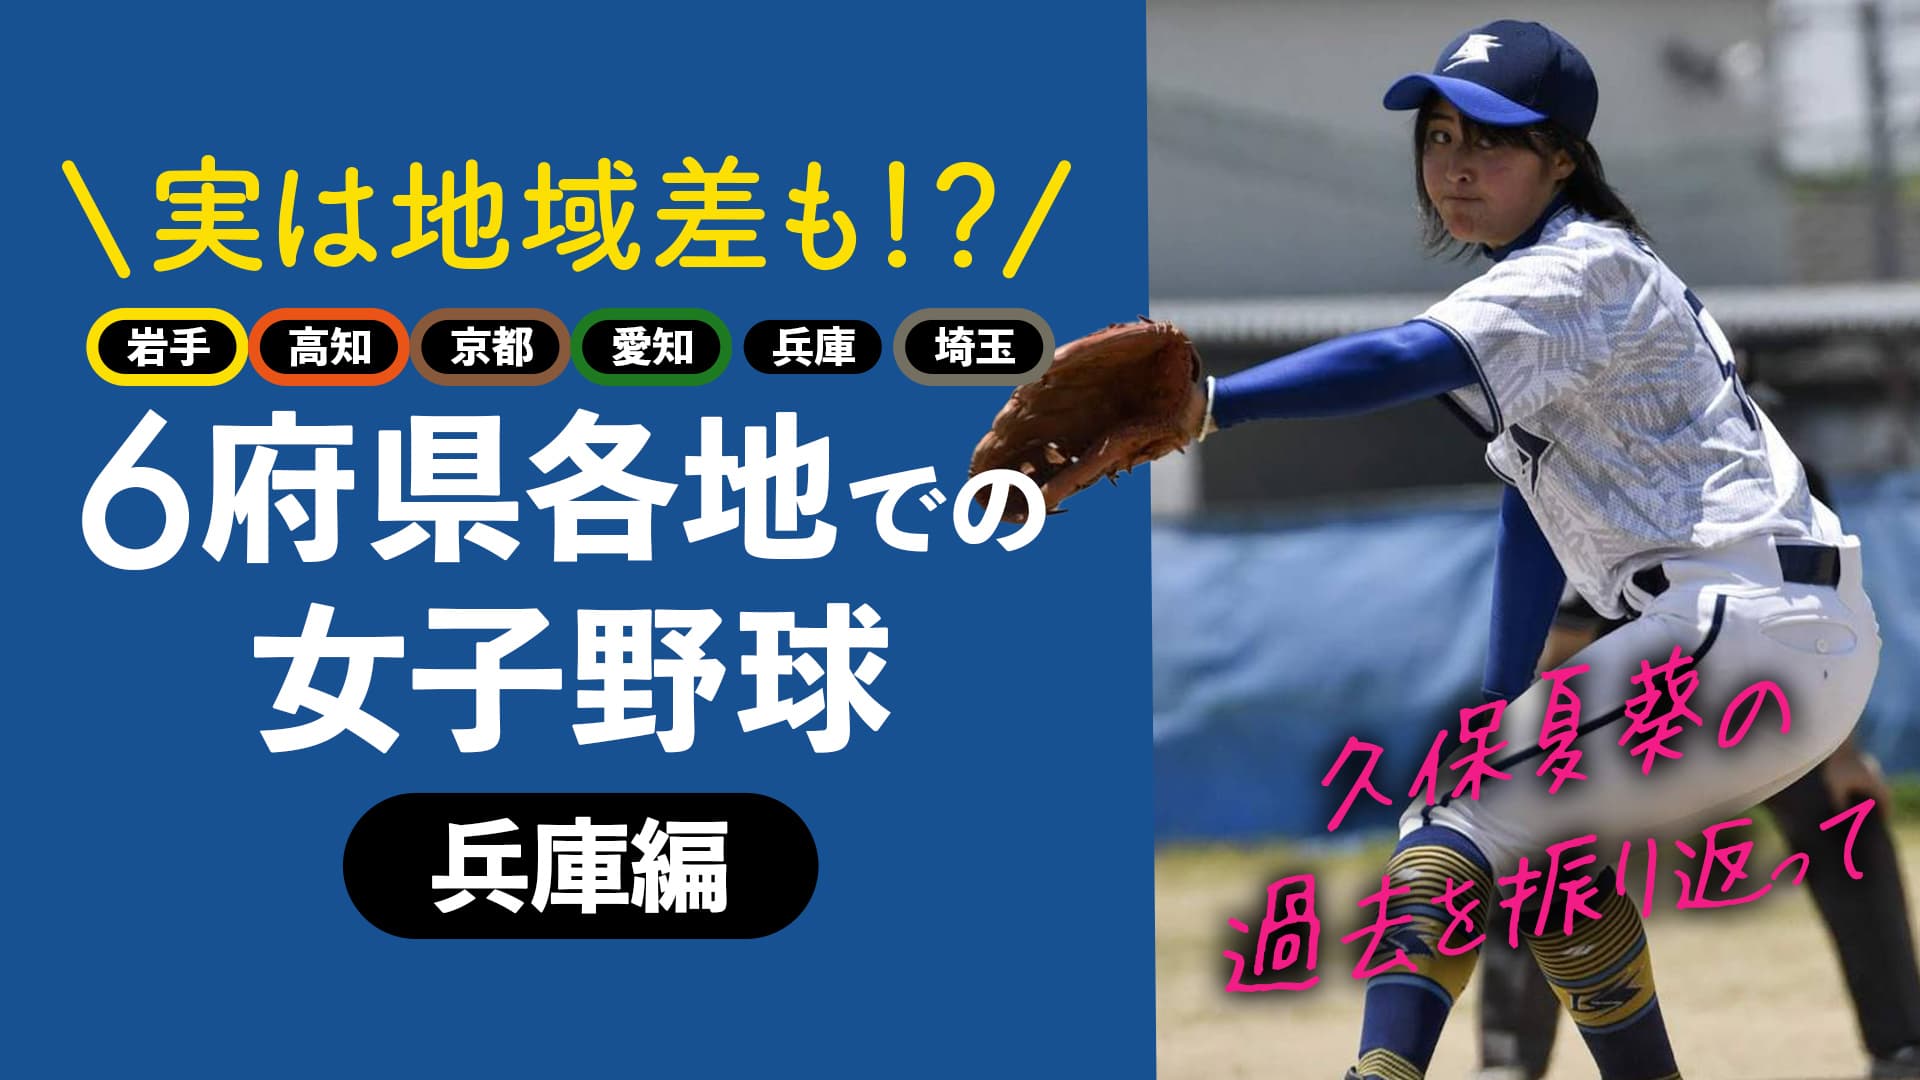 【兵庫編】6府県で女子野球を経験した久保夏葵が各地で感じたこと